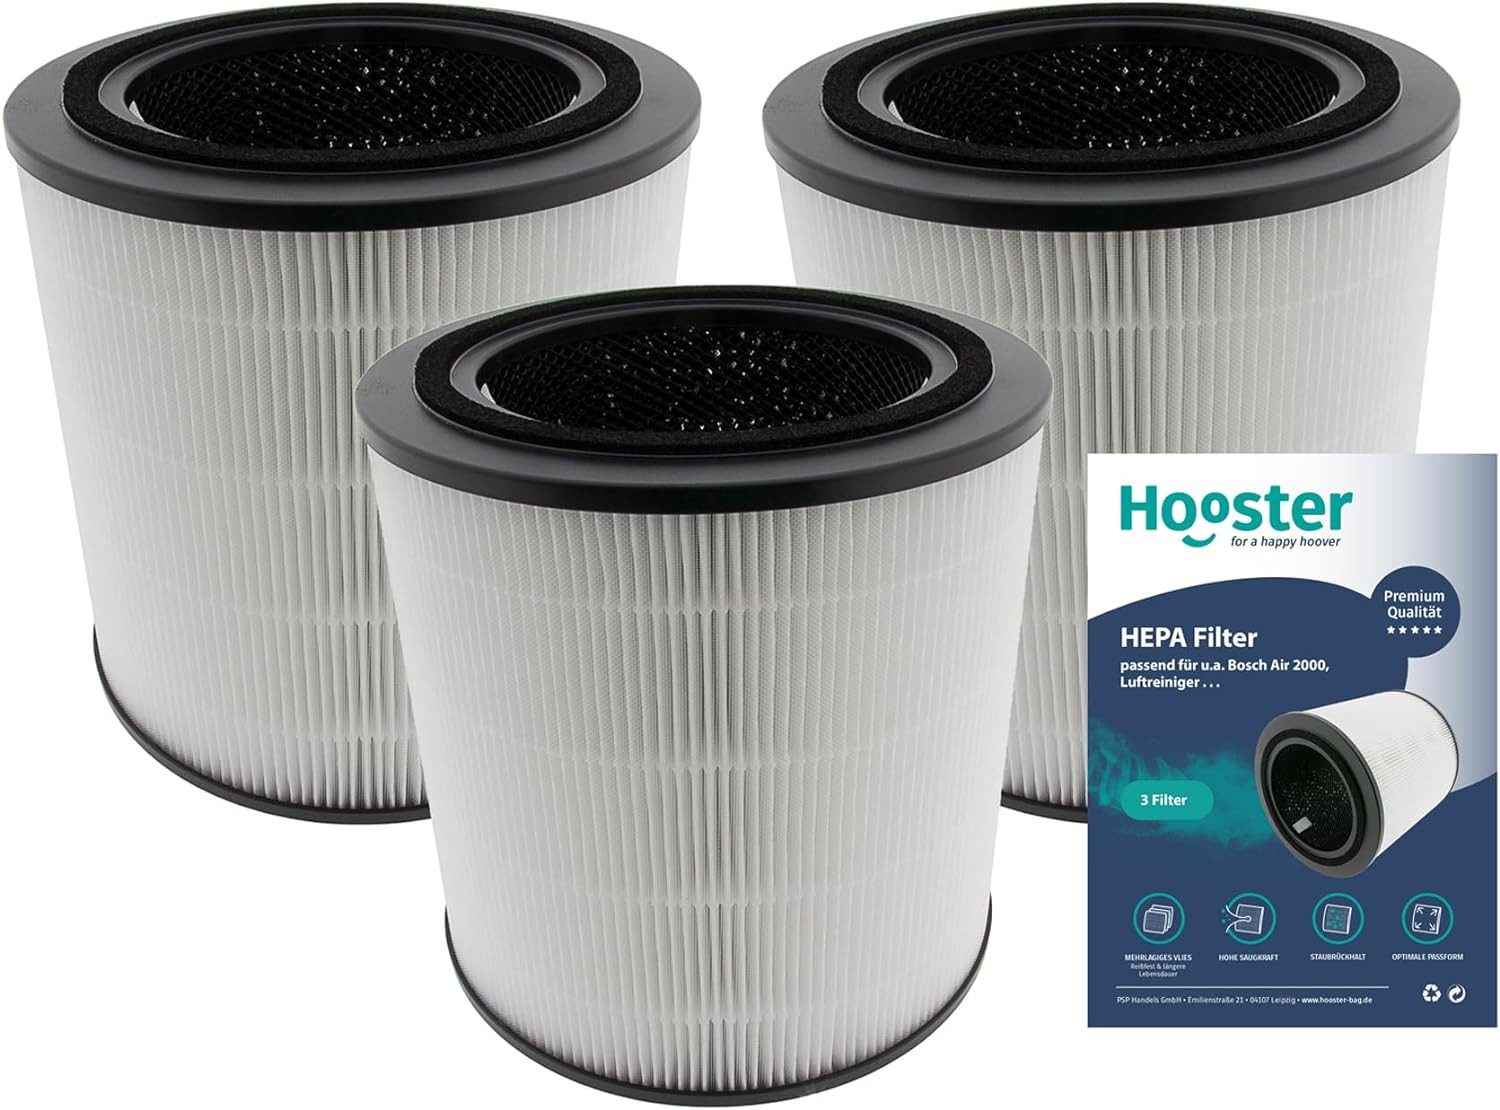 Hooster Luftfilter 3er Set Filter kompatibel mit Bosch Air 2000 Luftreiniger, 3in1 HEPA/Aktivkohle Filter für eine optimale Luftreinigung